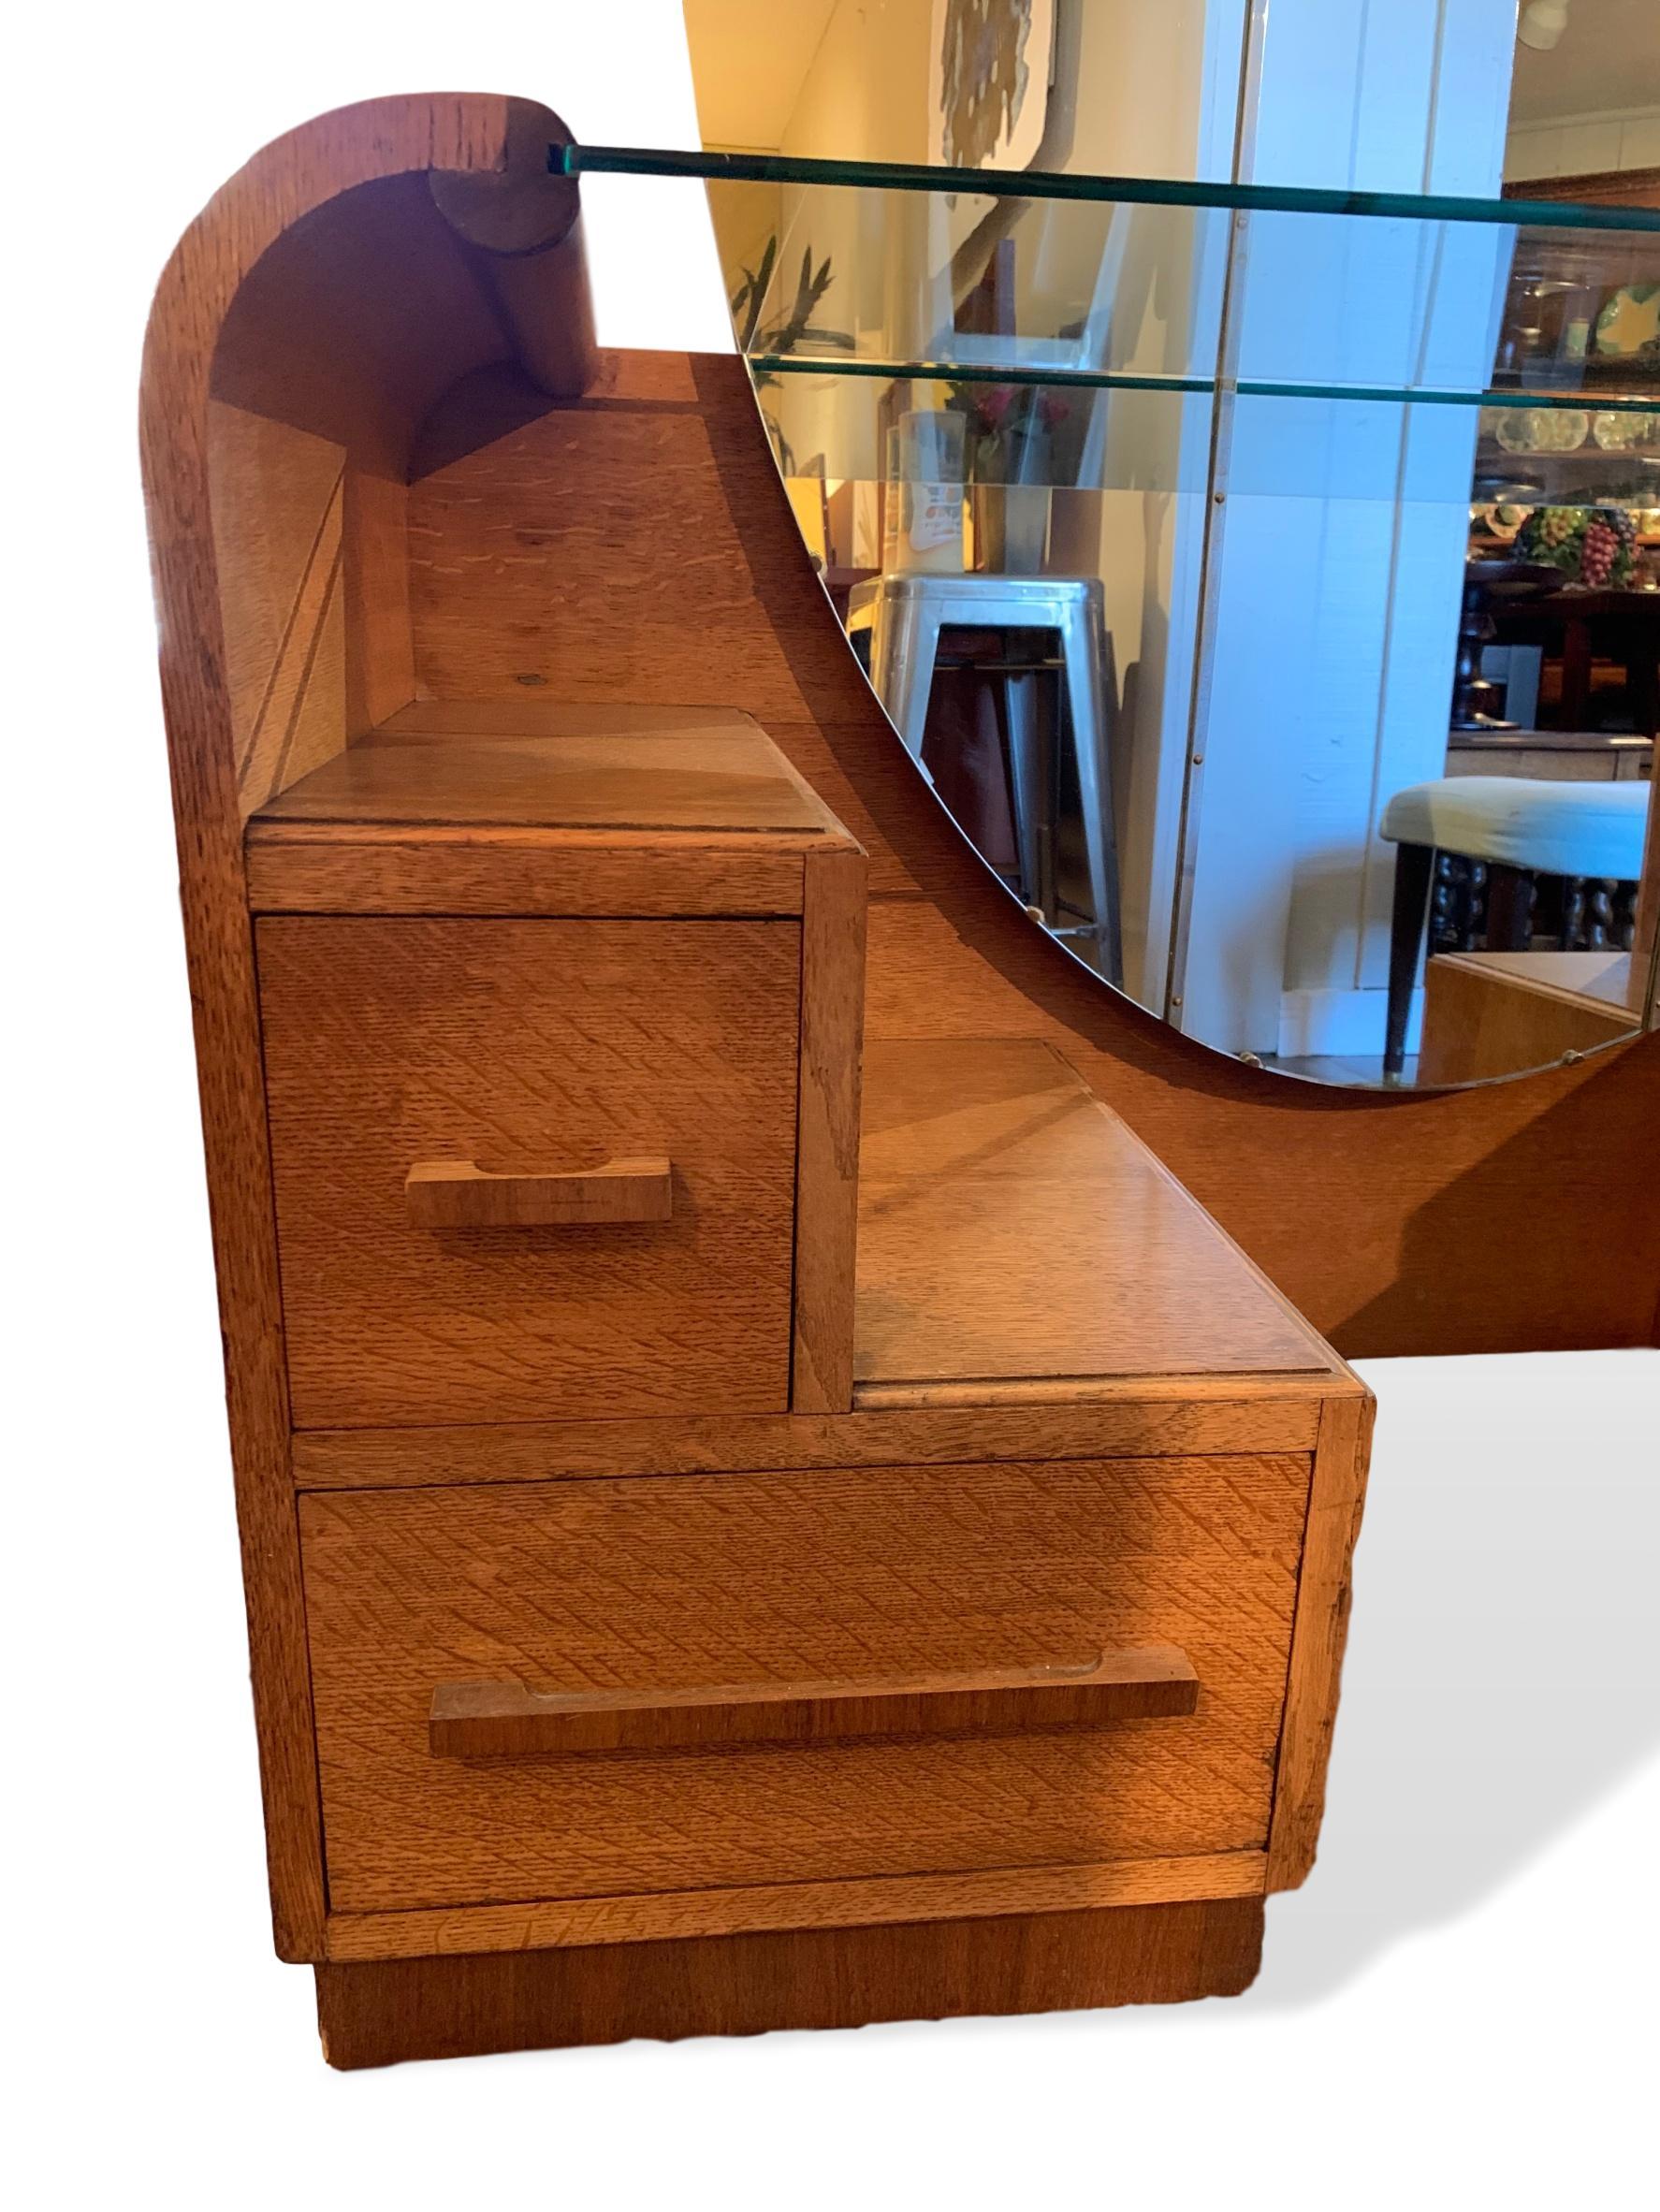 Verspiegelter Art Deco-Waschtisch aus Goldeiche mit Schubladen:: hergestellt von der englischen Firma EG Furniture:: 1940er Jahre. EG Furniture wurde später durch seine G-Plan-Möbelreihe bekannt. Die Kommode verfügt über vier Schubladen:: wobei die